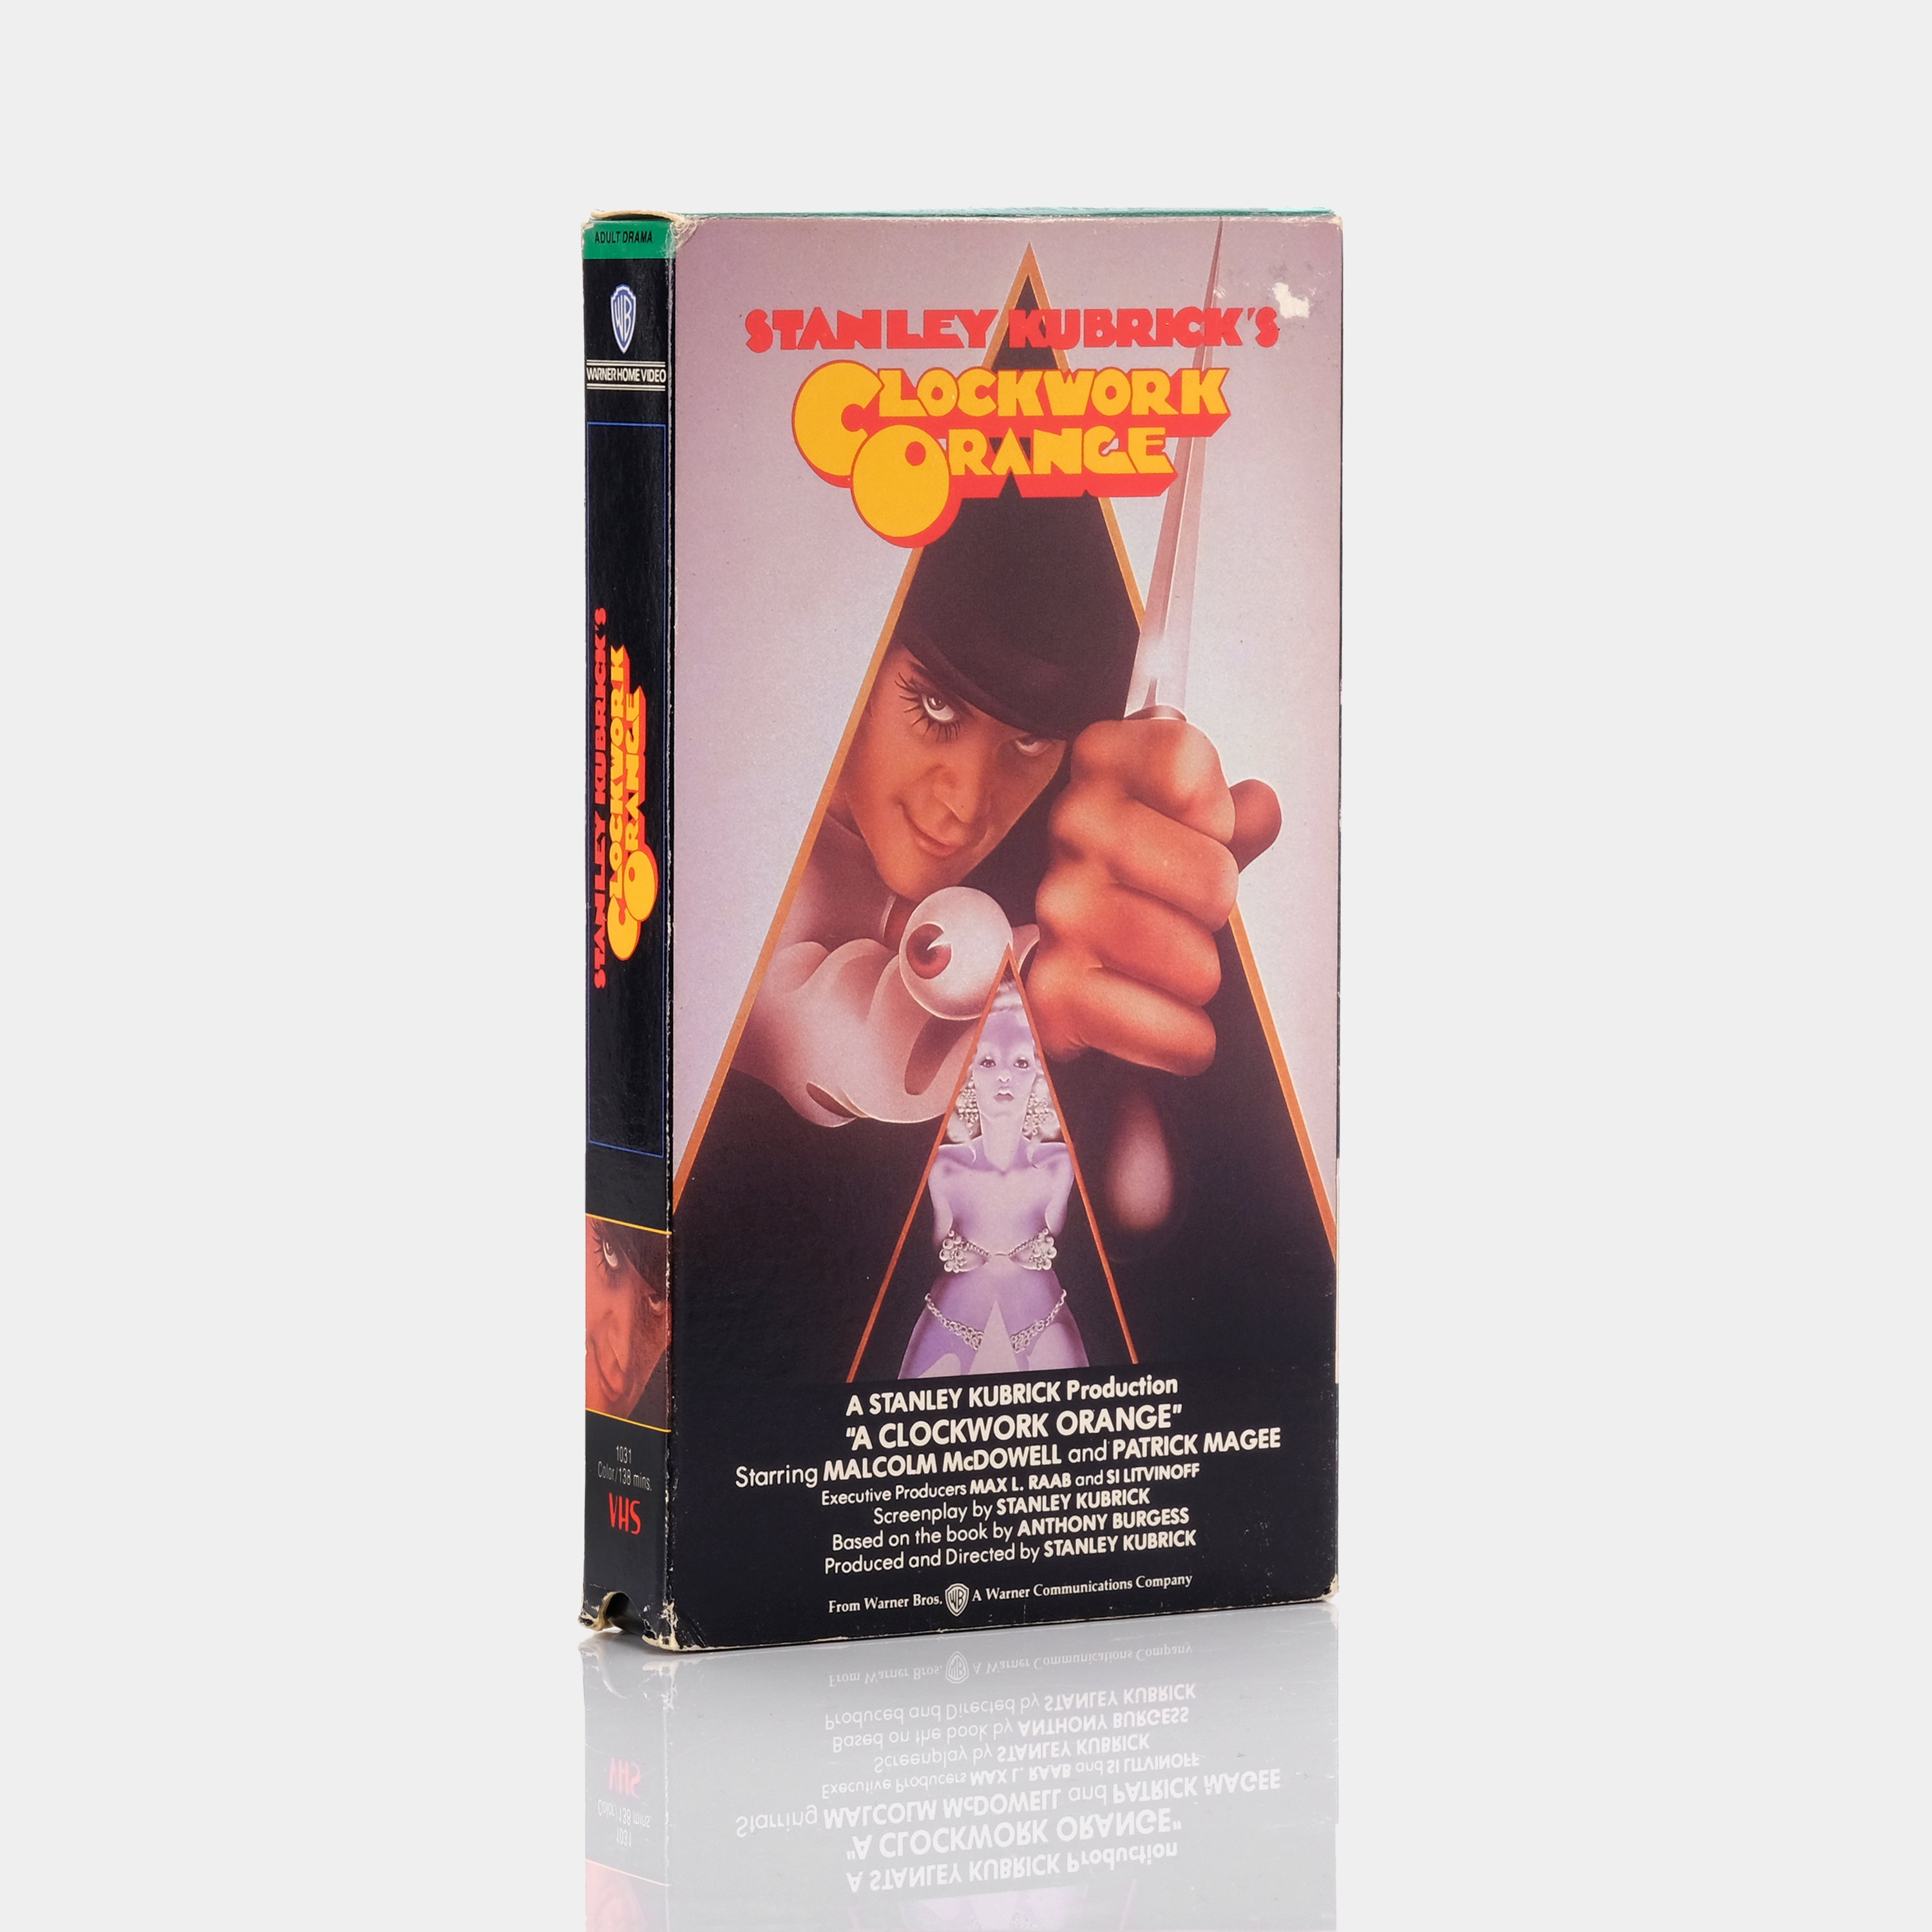 A Clockwork Orange VHS Tape